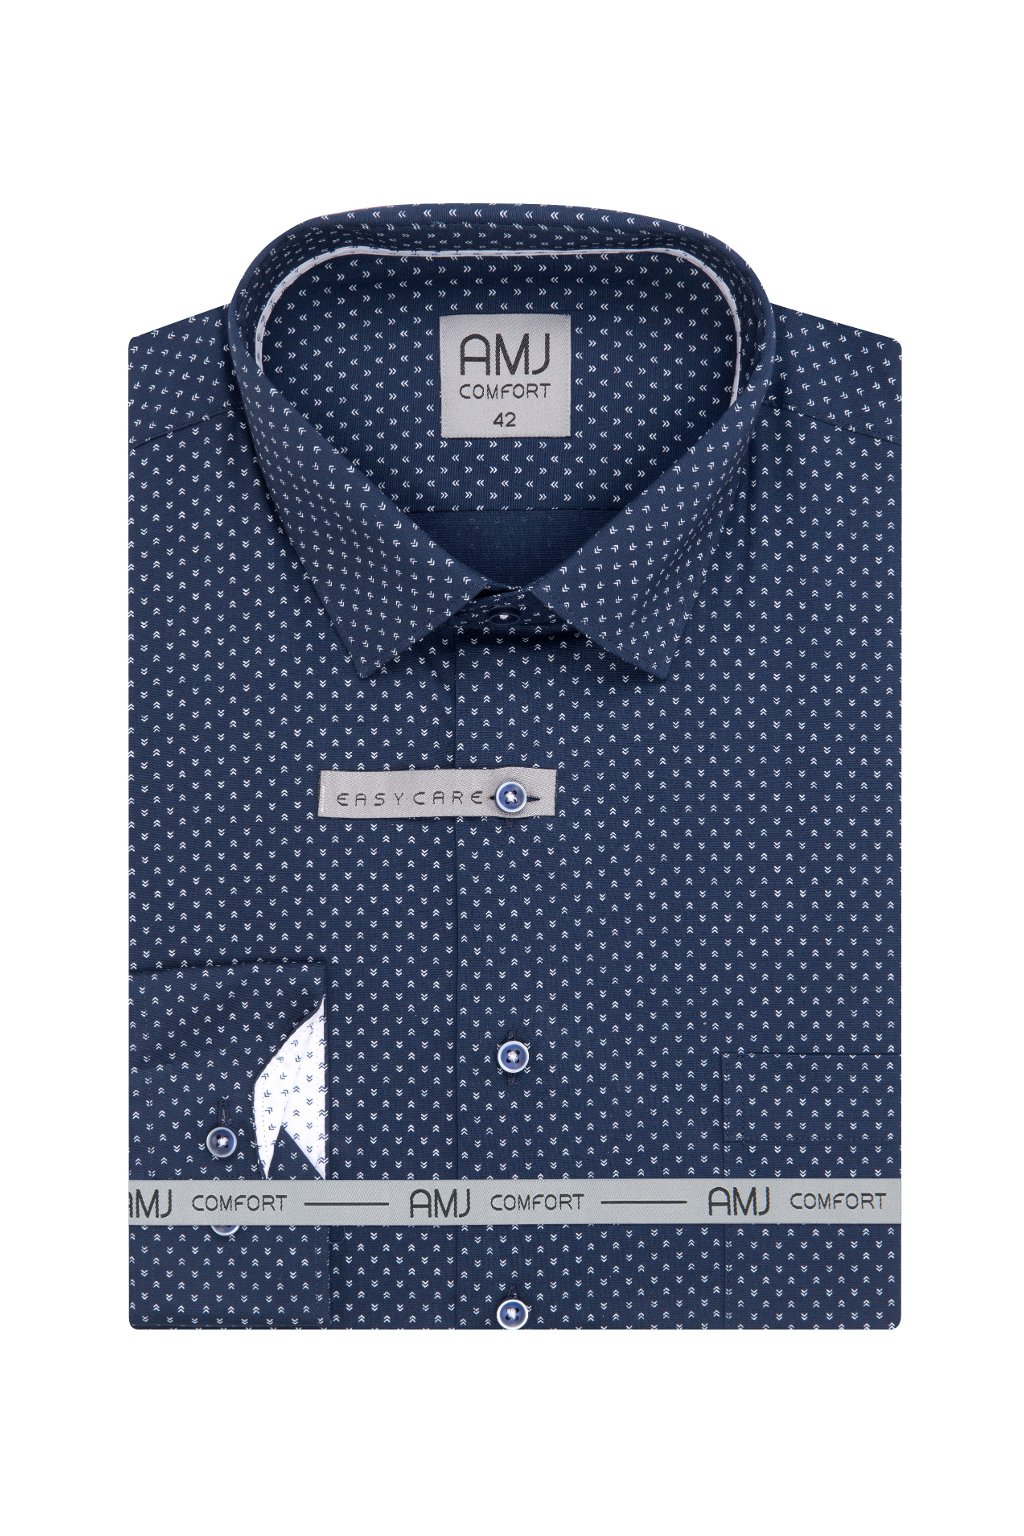 Pánská košile AMJ Comfort fit navy se světlým vzorem